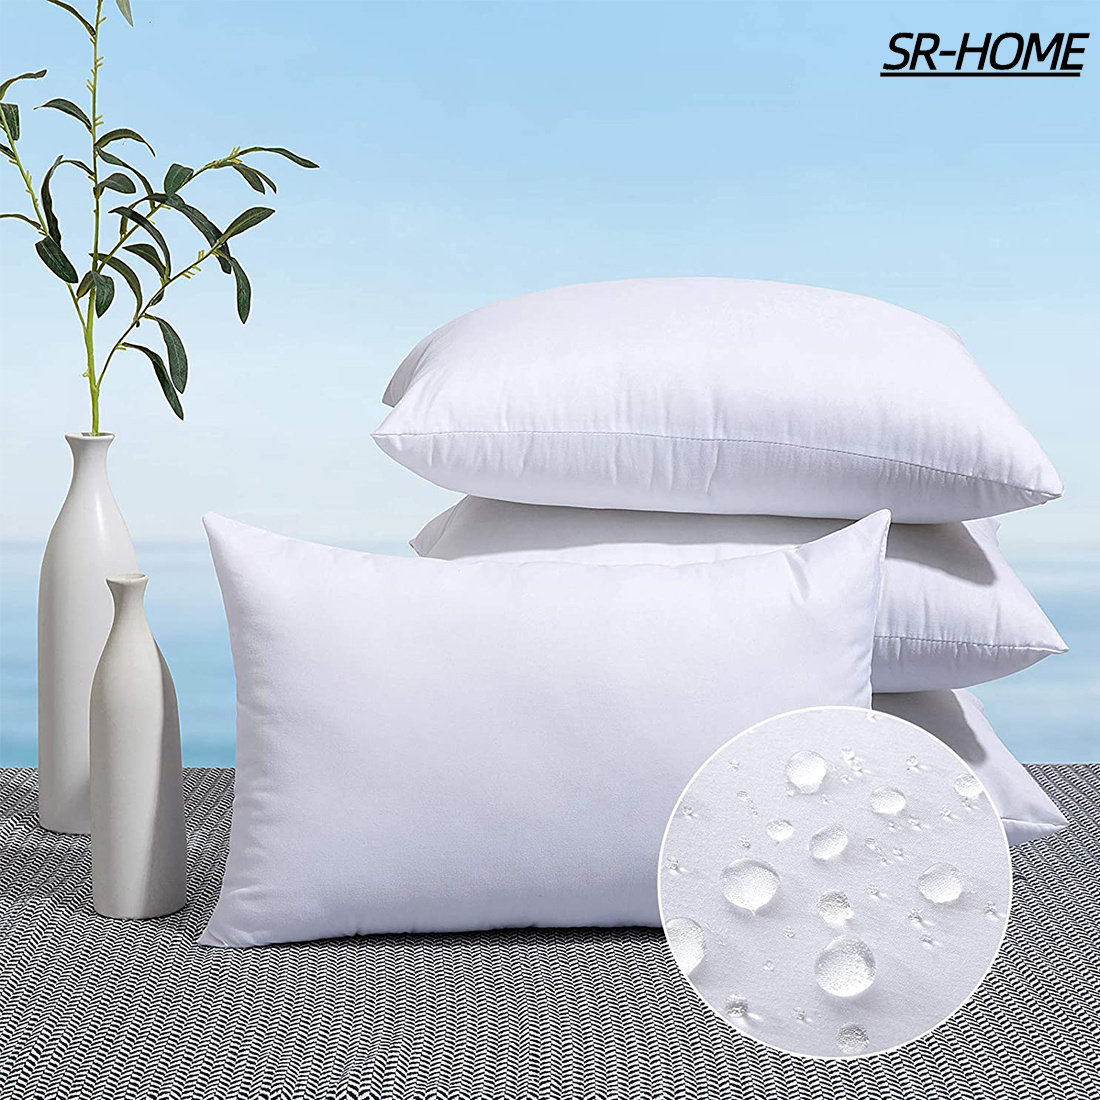 Fennco Styles 100% Poly Fiber Pillow Filler Insert - White - Made in USA